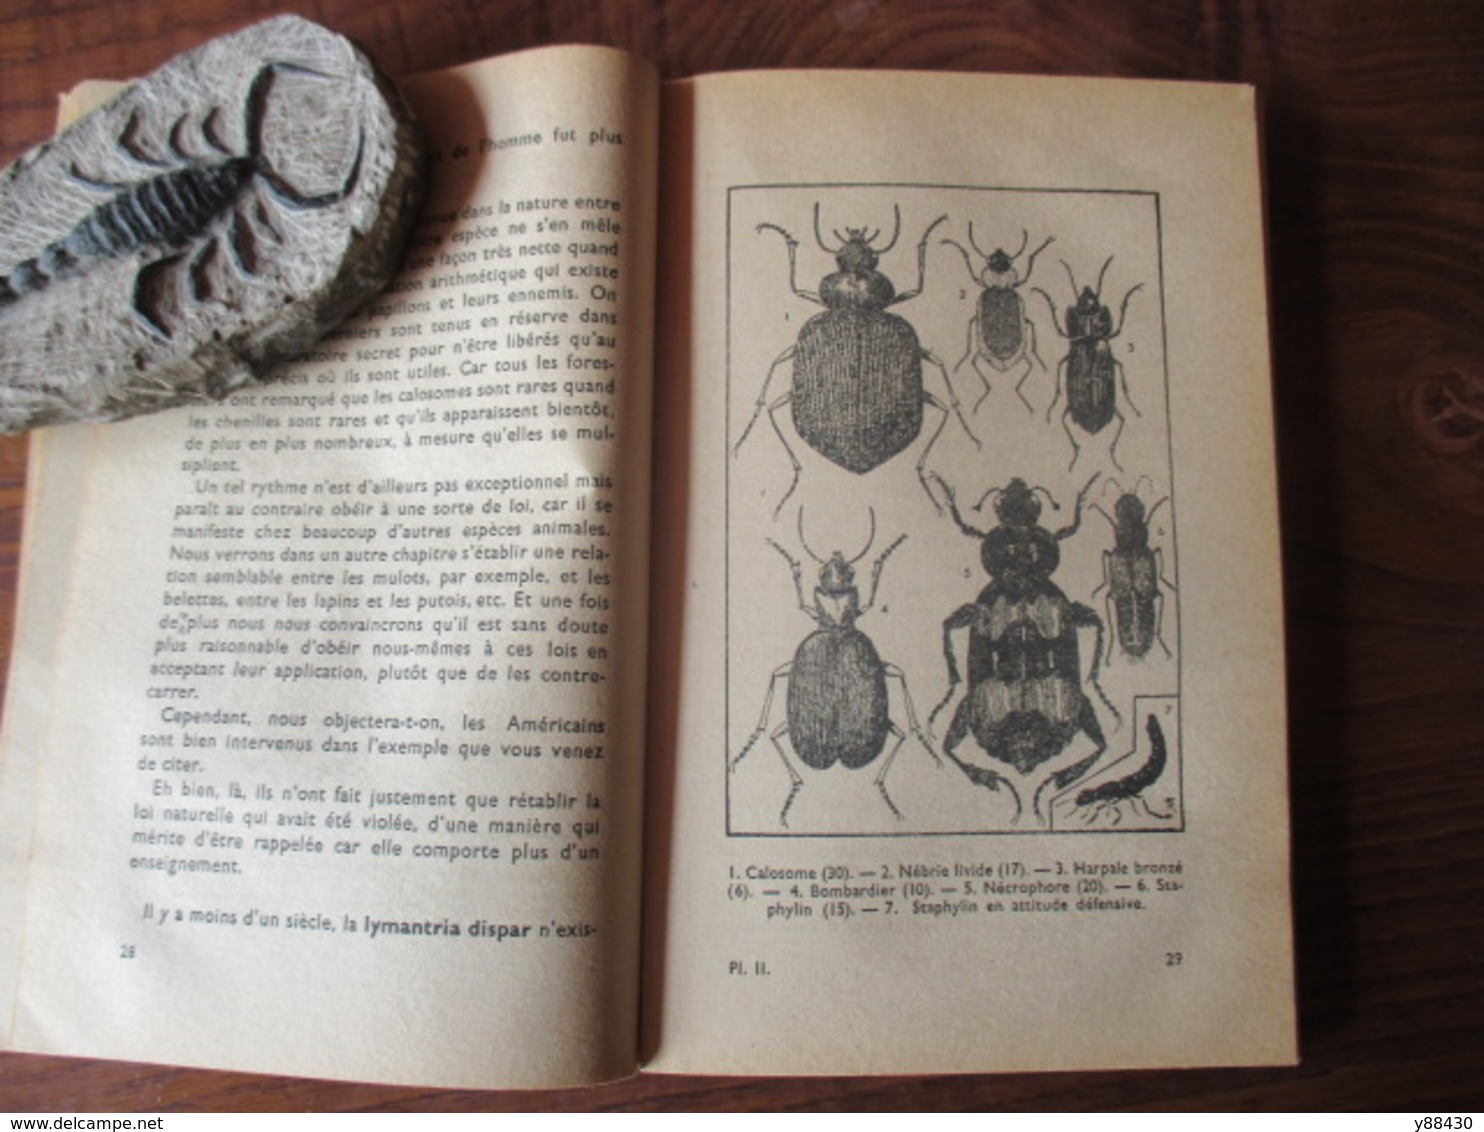 Livre sur LES INSECTES - LES HOTES UTILES DU JARDIN - année 1944 - Collection "Sciences et Voyages" - 136 pages -21 scan